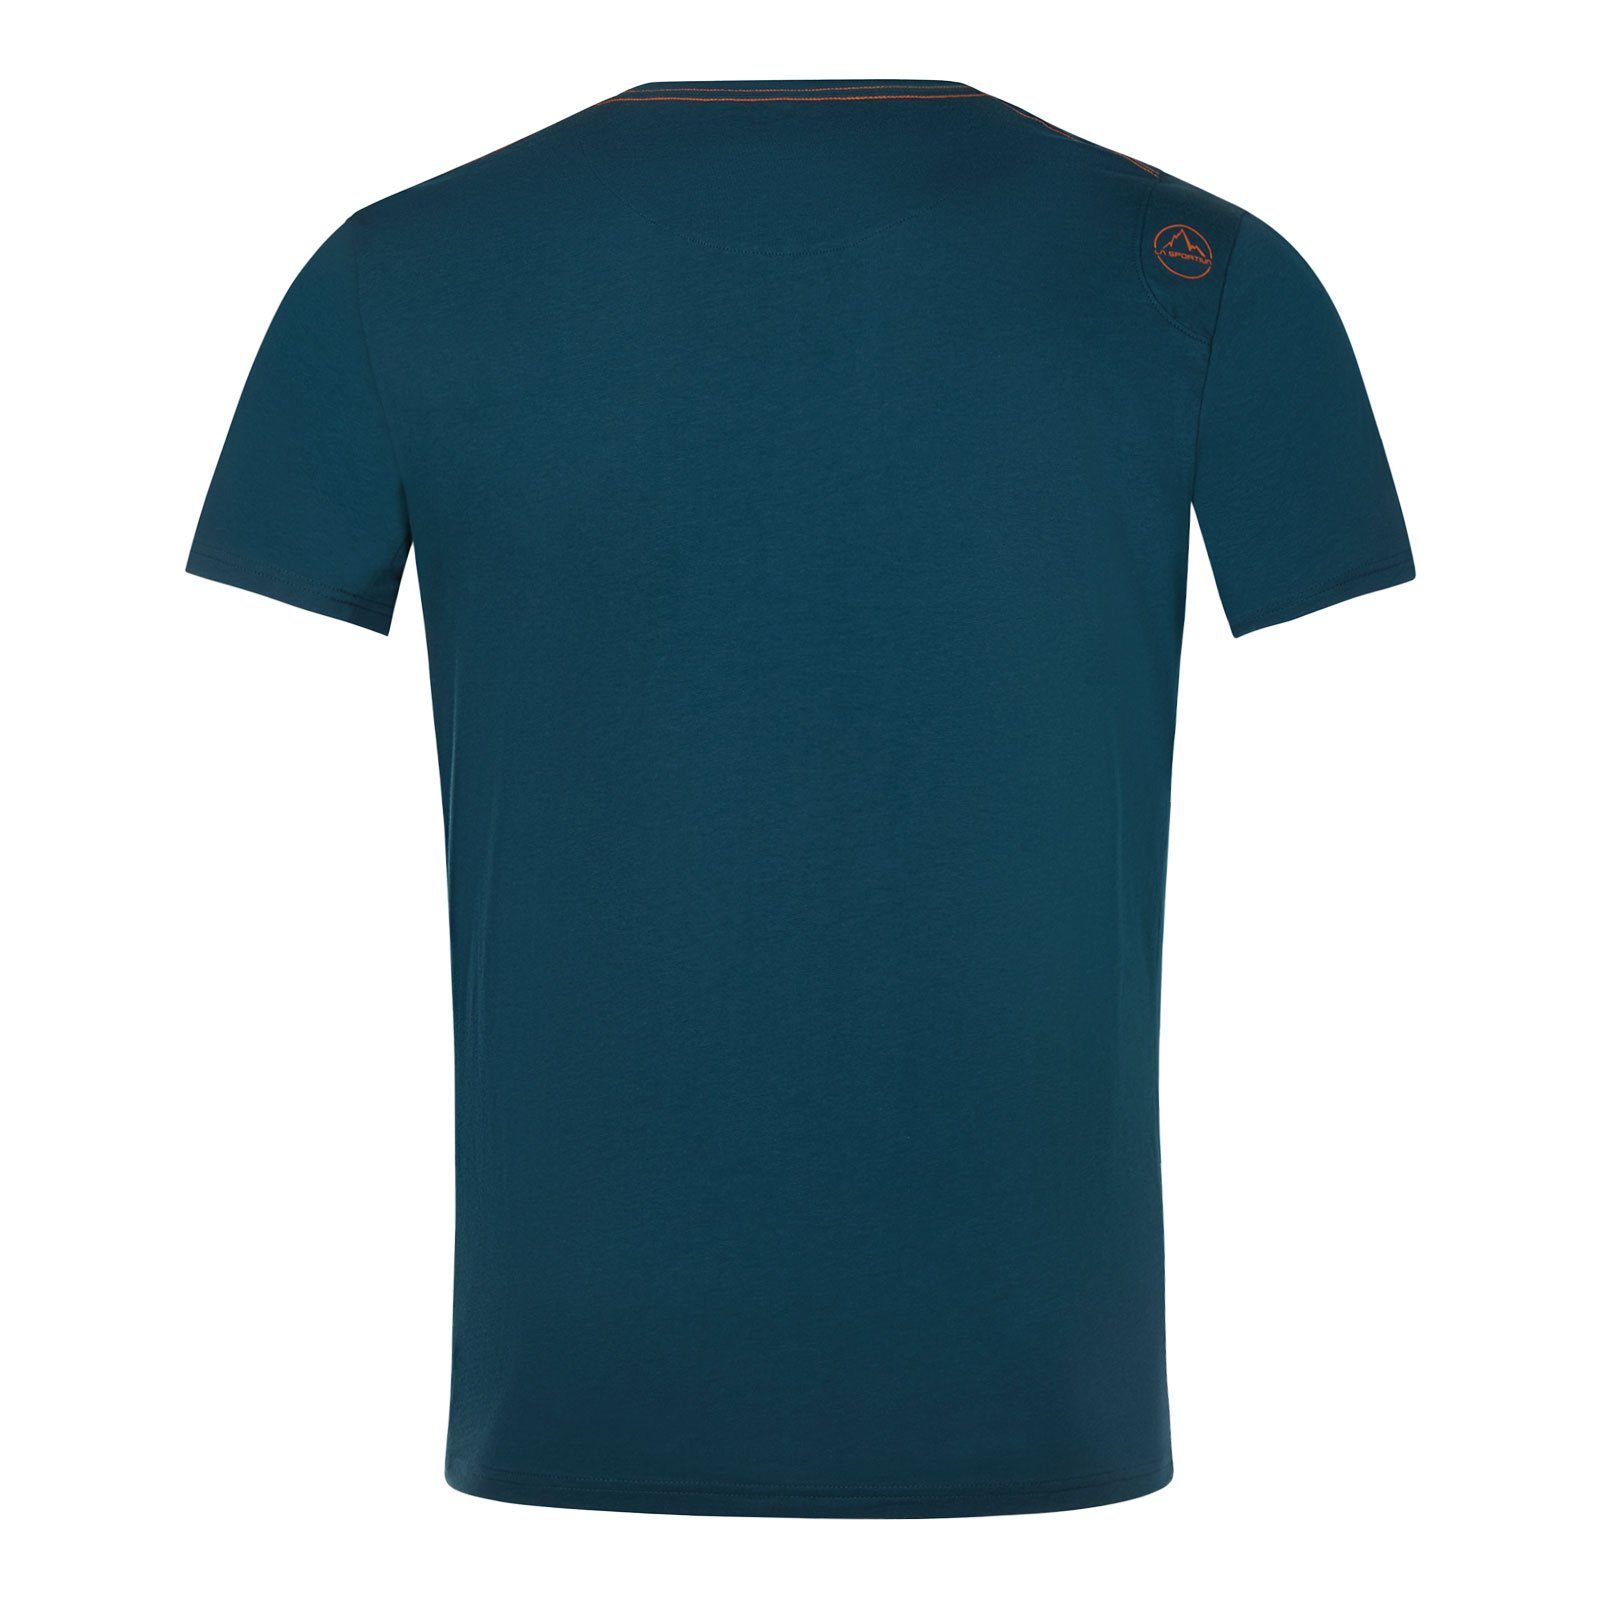 La Sportiva T-Shirt Van M organischer 639639 blue aus Baumwolle 100% storm